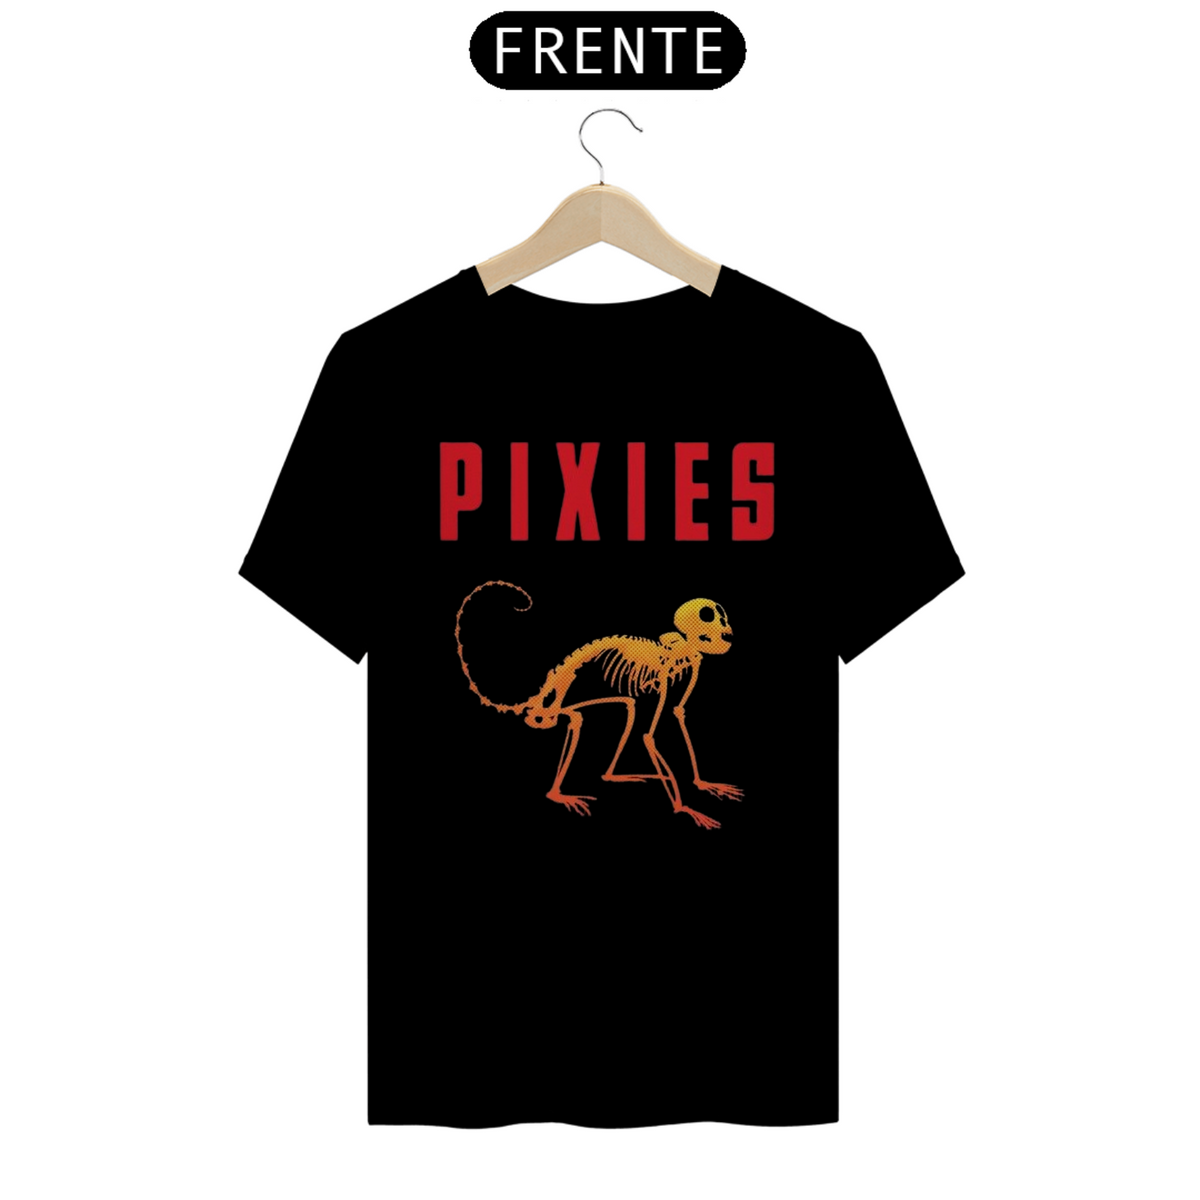 Nome do produto: Pixies